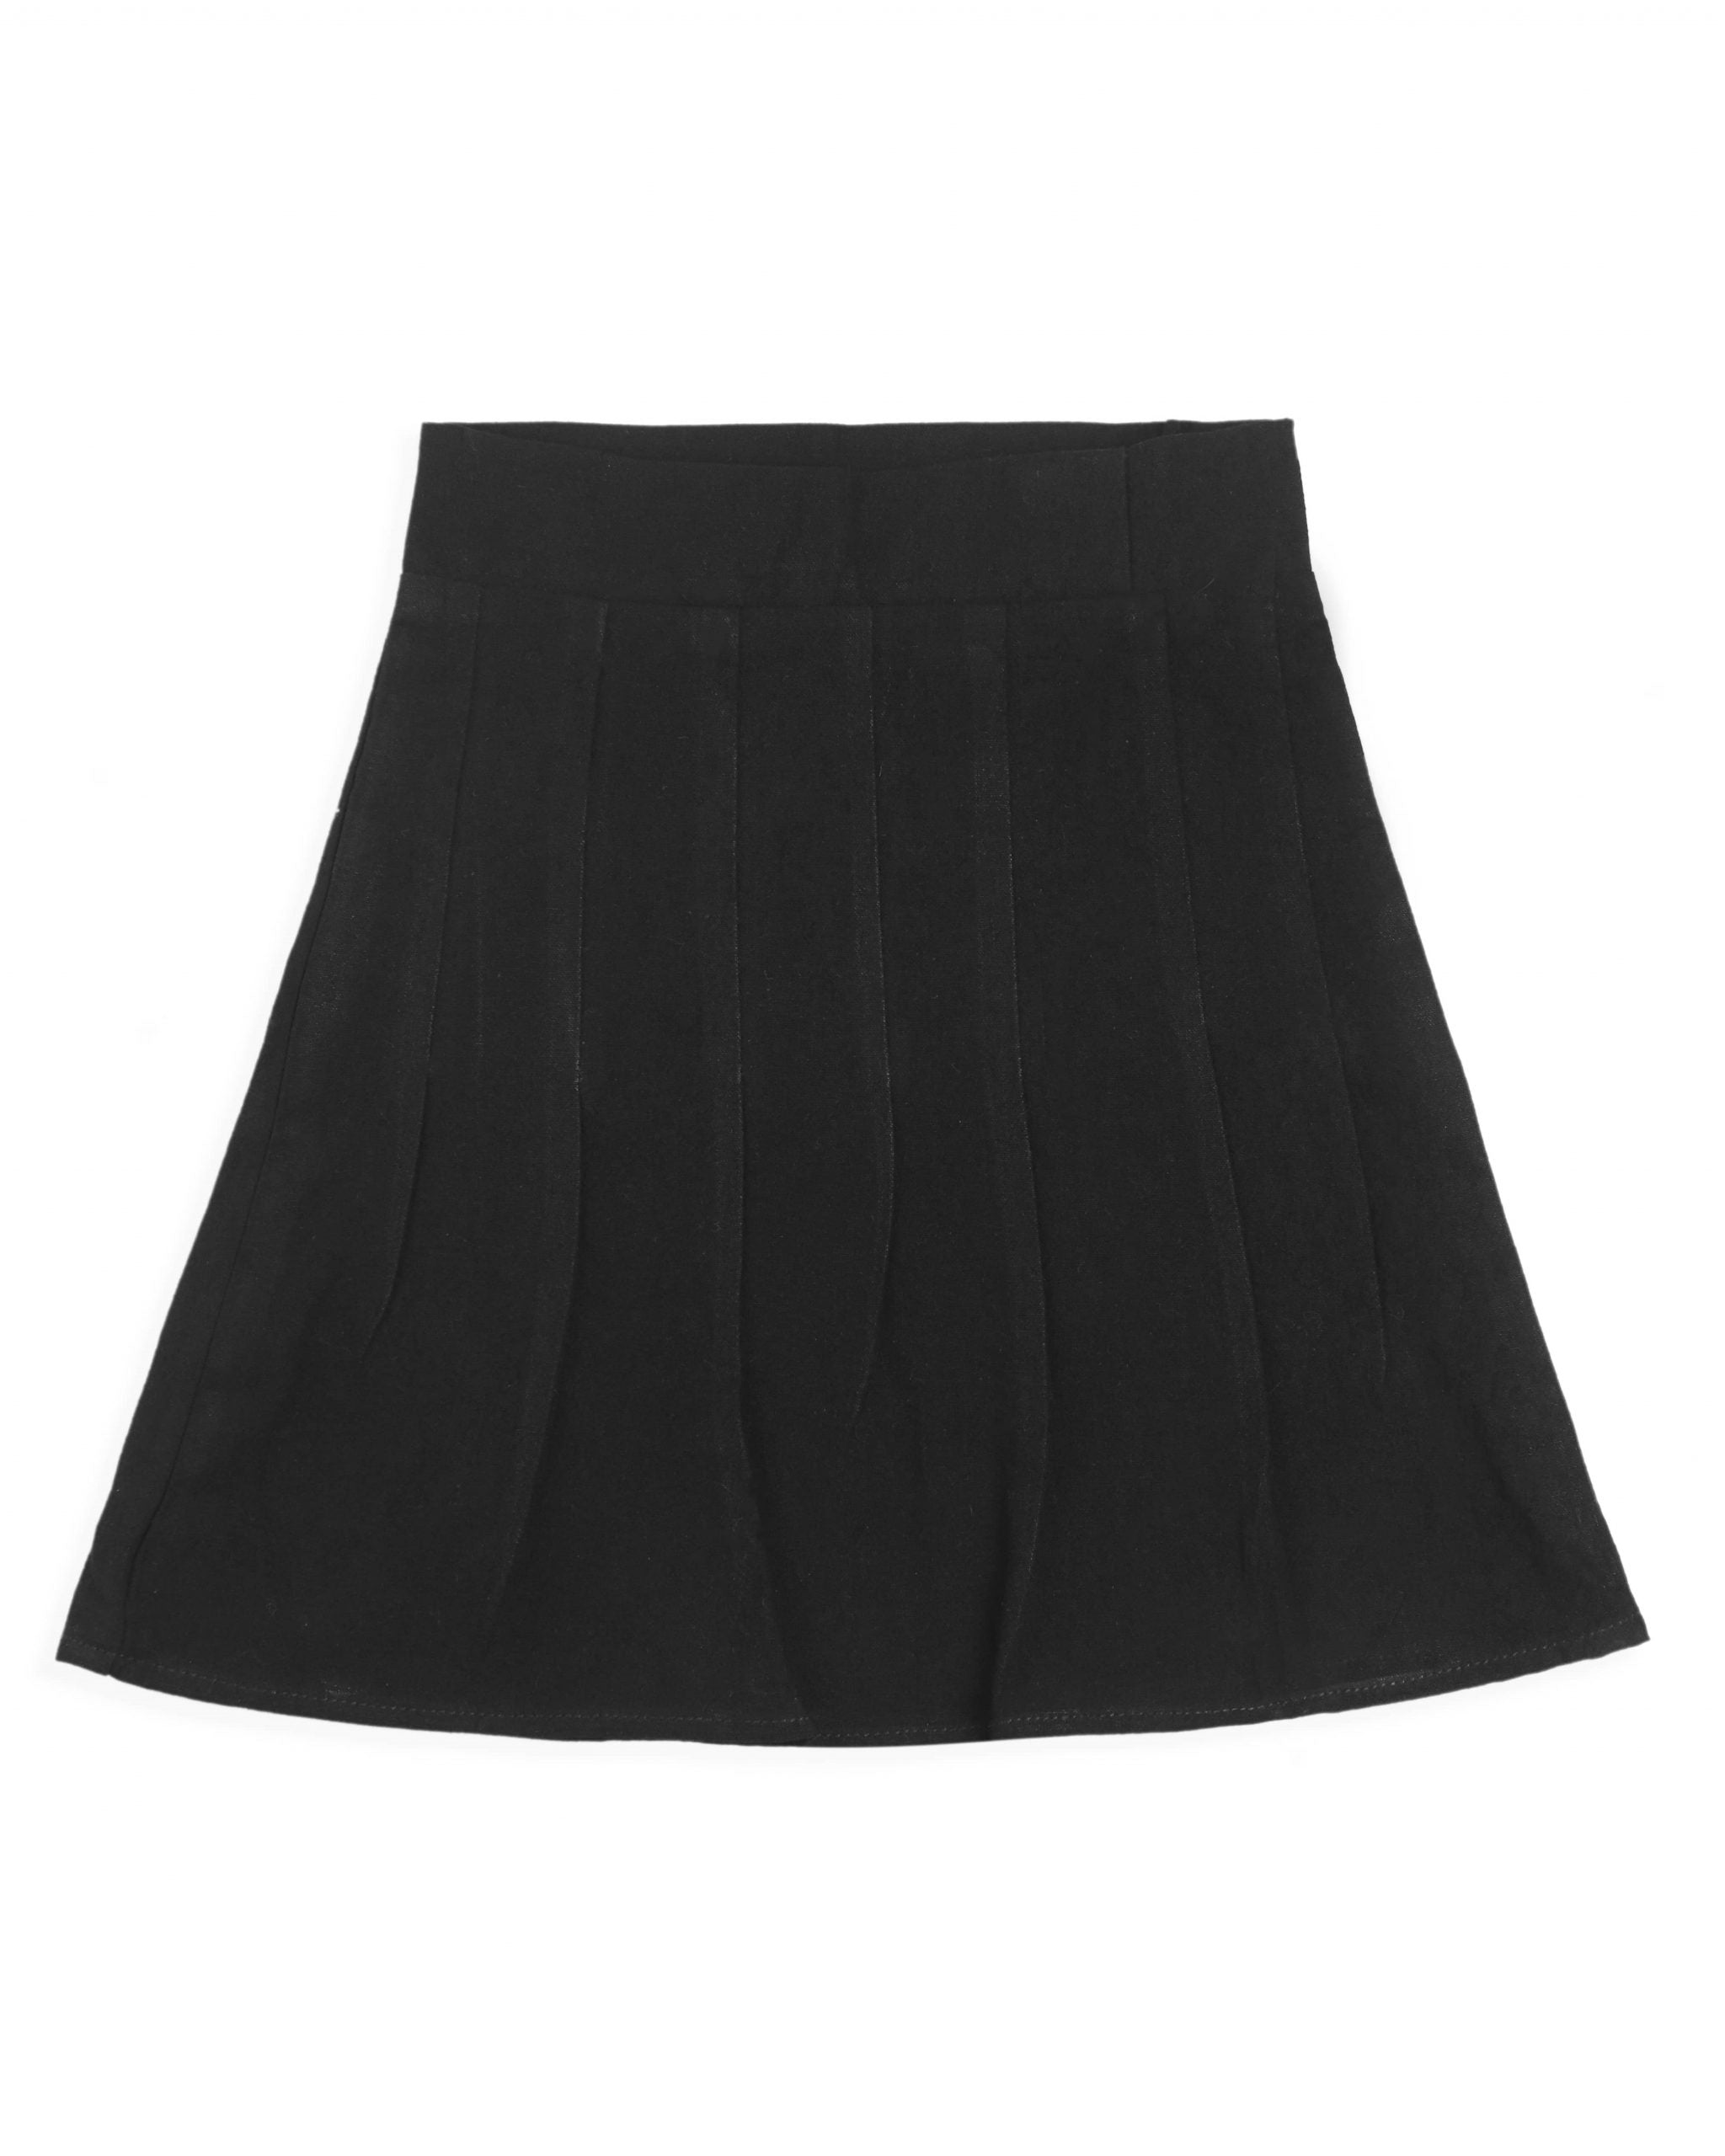 Black skirt 2.1